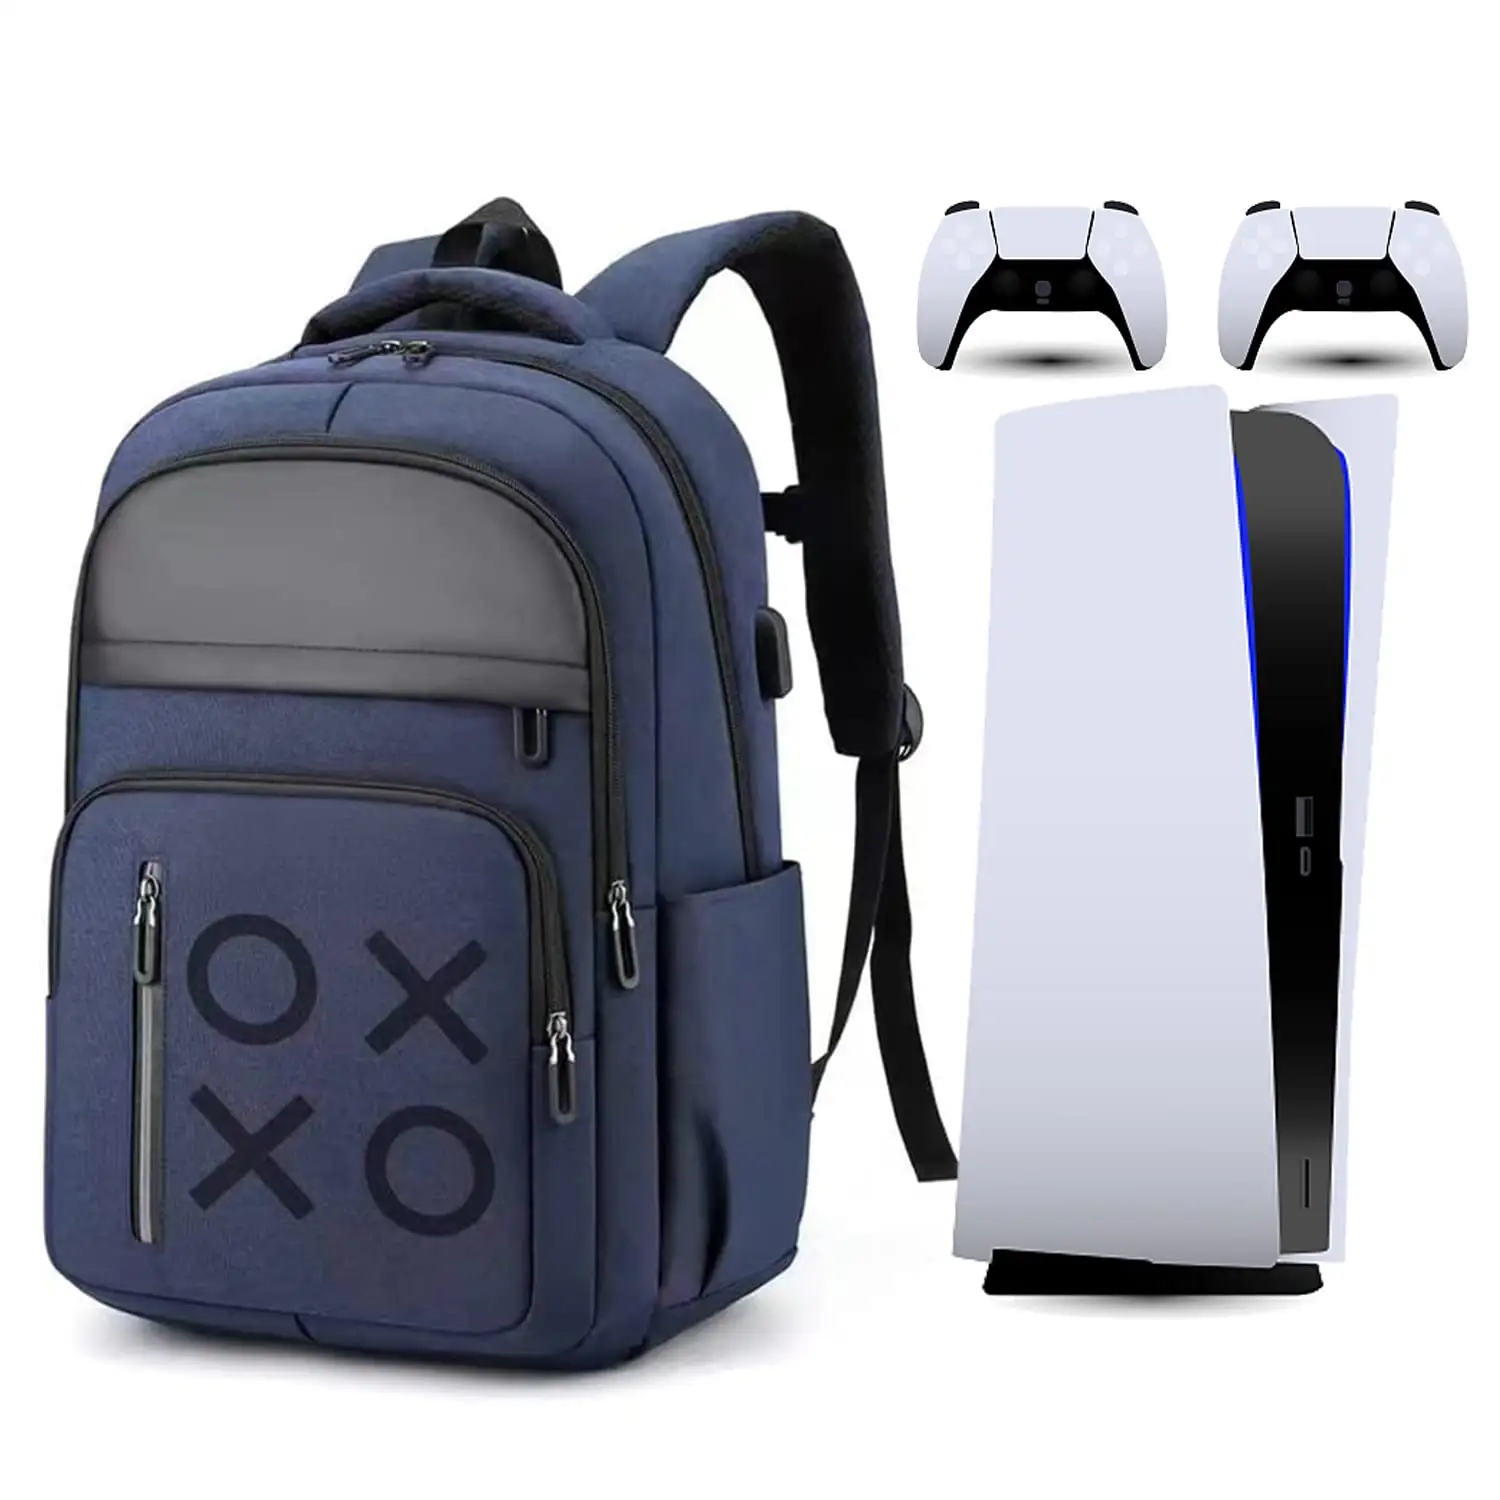 Дорожная сумка, чехол для игровой консоли, сумка для переноски, сумка для хранения, совместимая с PS5 Xbox серии